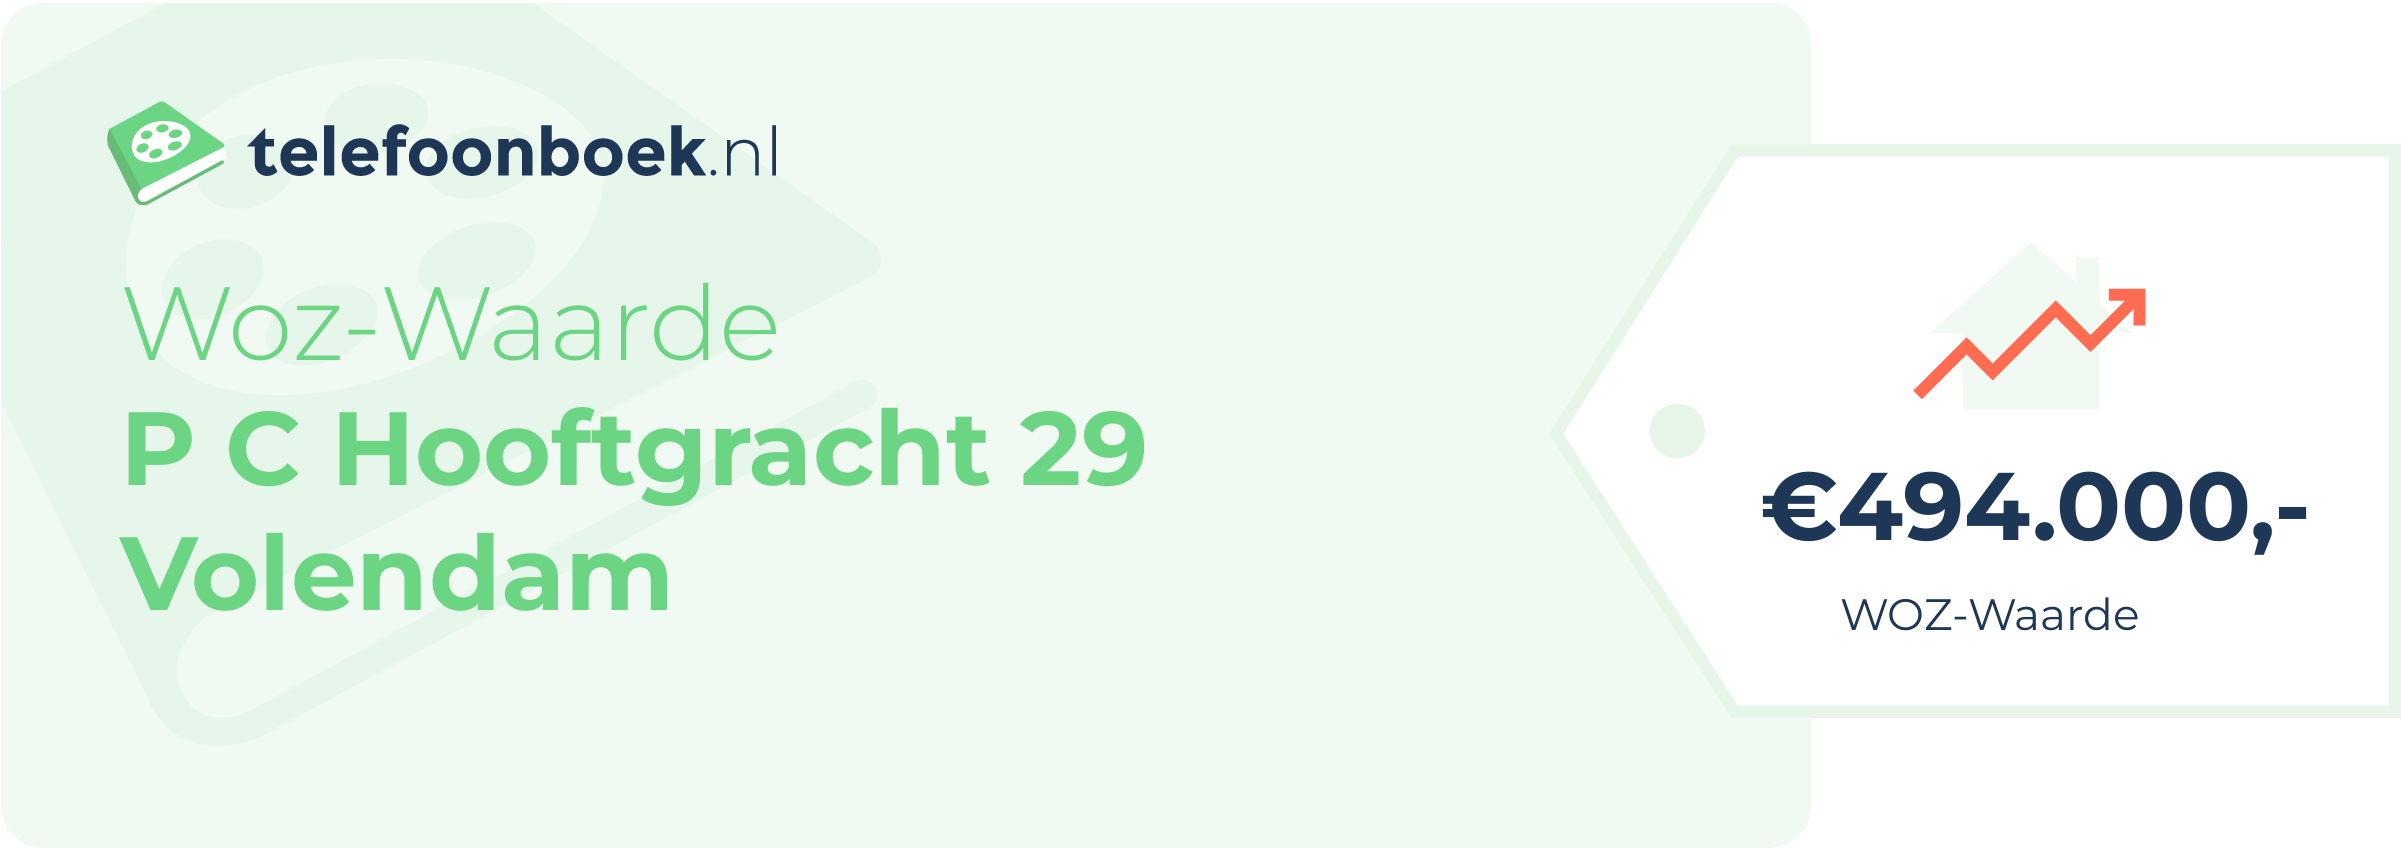 WOZ-waarde P C Hooftgracht 29 Volendam